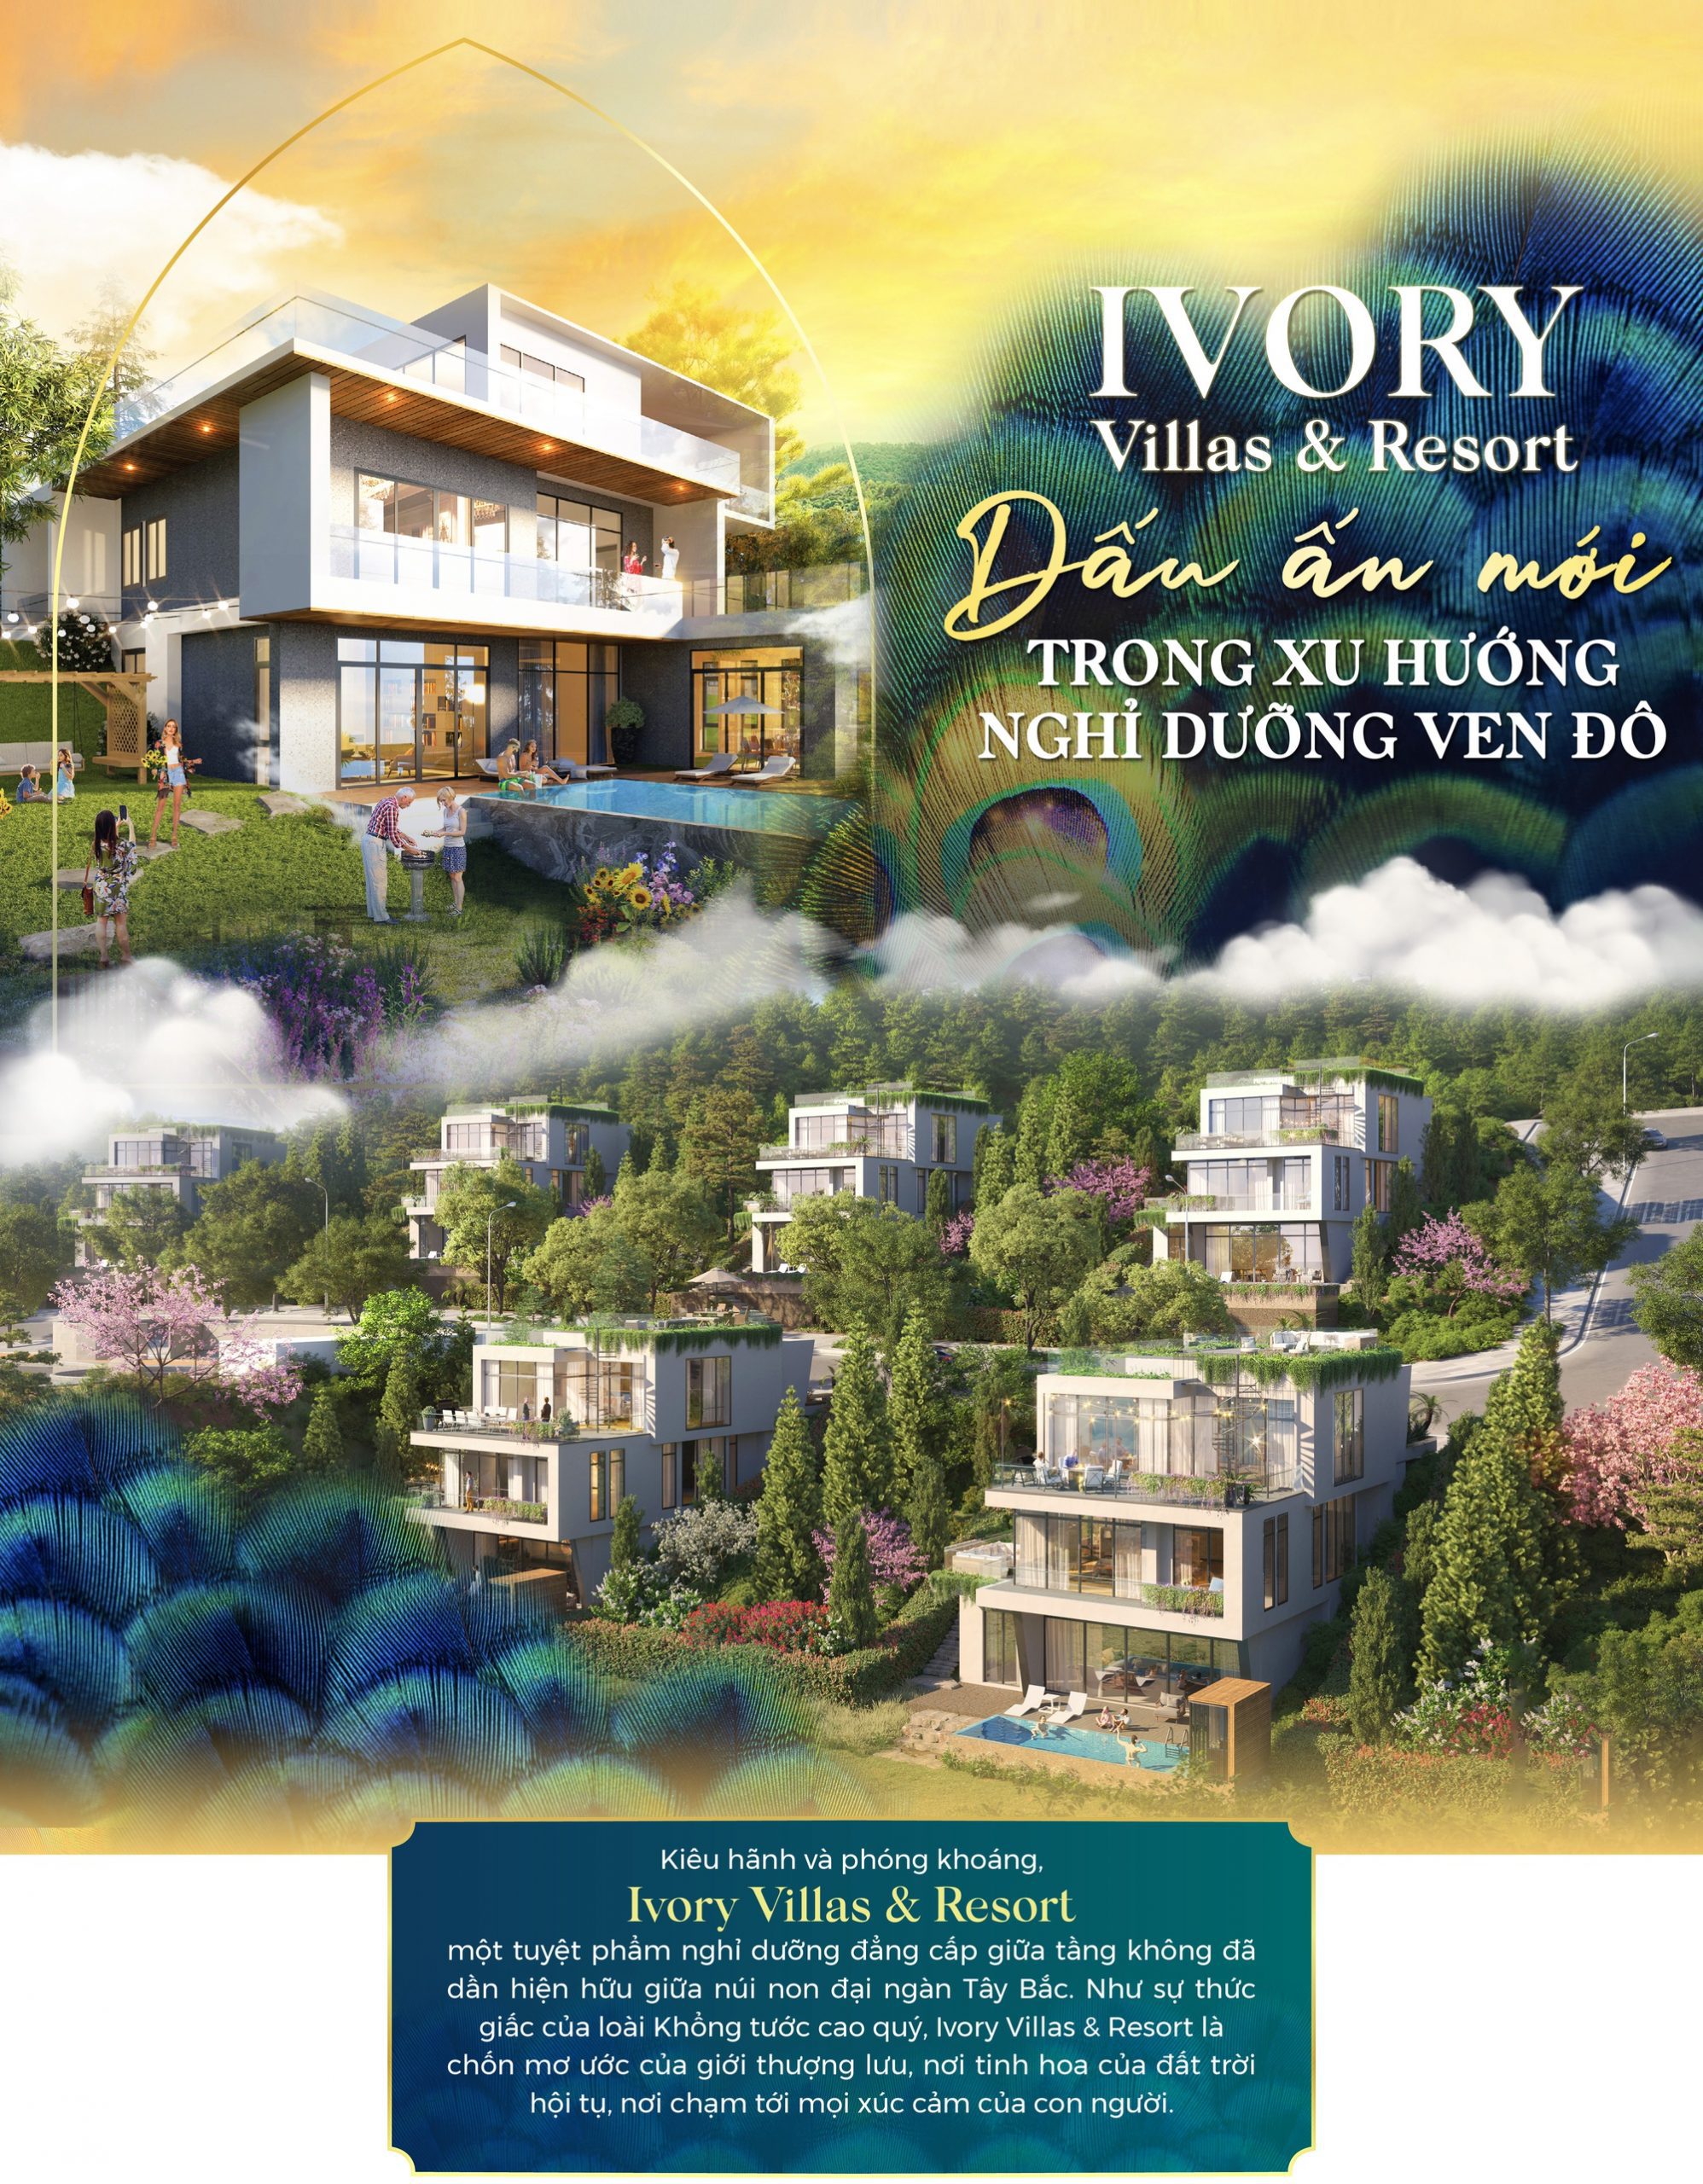 Ivory Villas & Resort: Bất động sản xu hướng nghỉ dưỡng ven đô 1